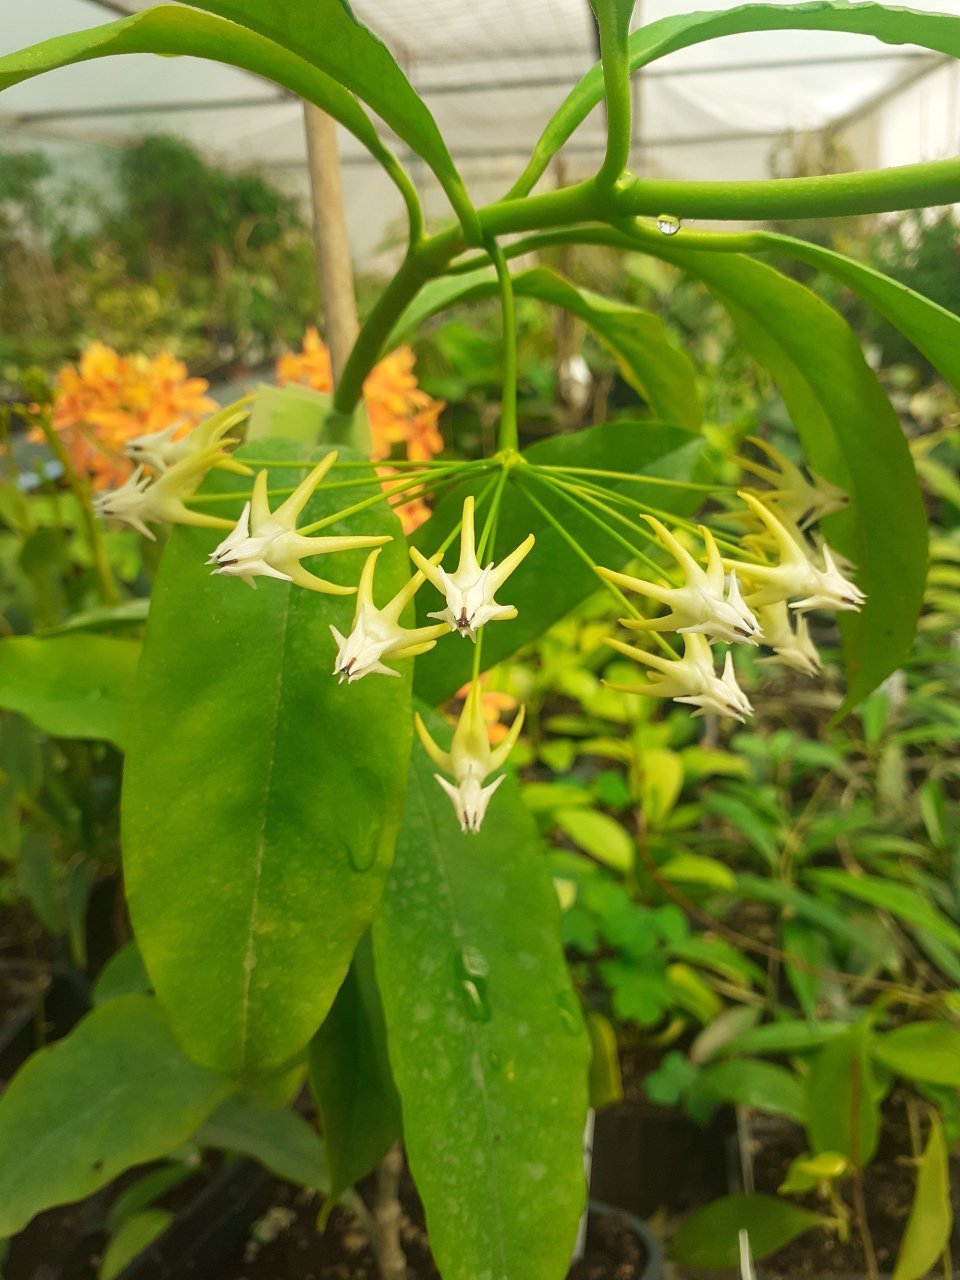 Hoya Multiflora mum çiçeği 20 - 30 cm boyda orta boy, güçlü sürgünlü, saksıda köklü tomurcuklu (kod:mum99c) 2. resimdeki